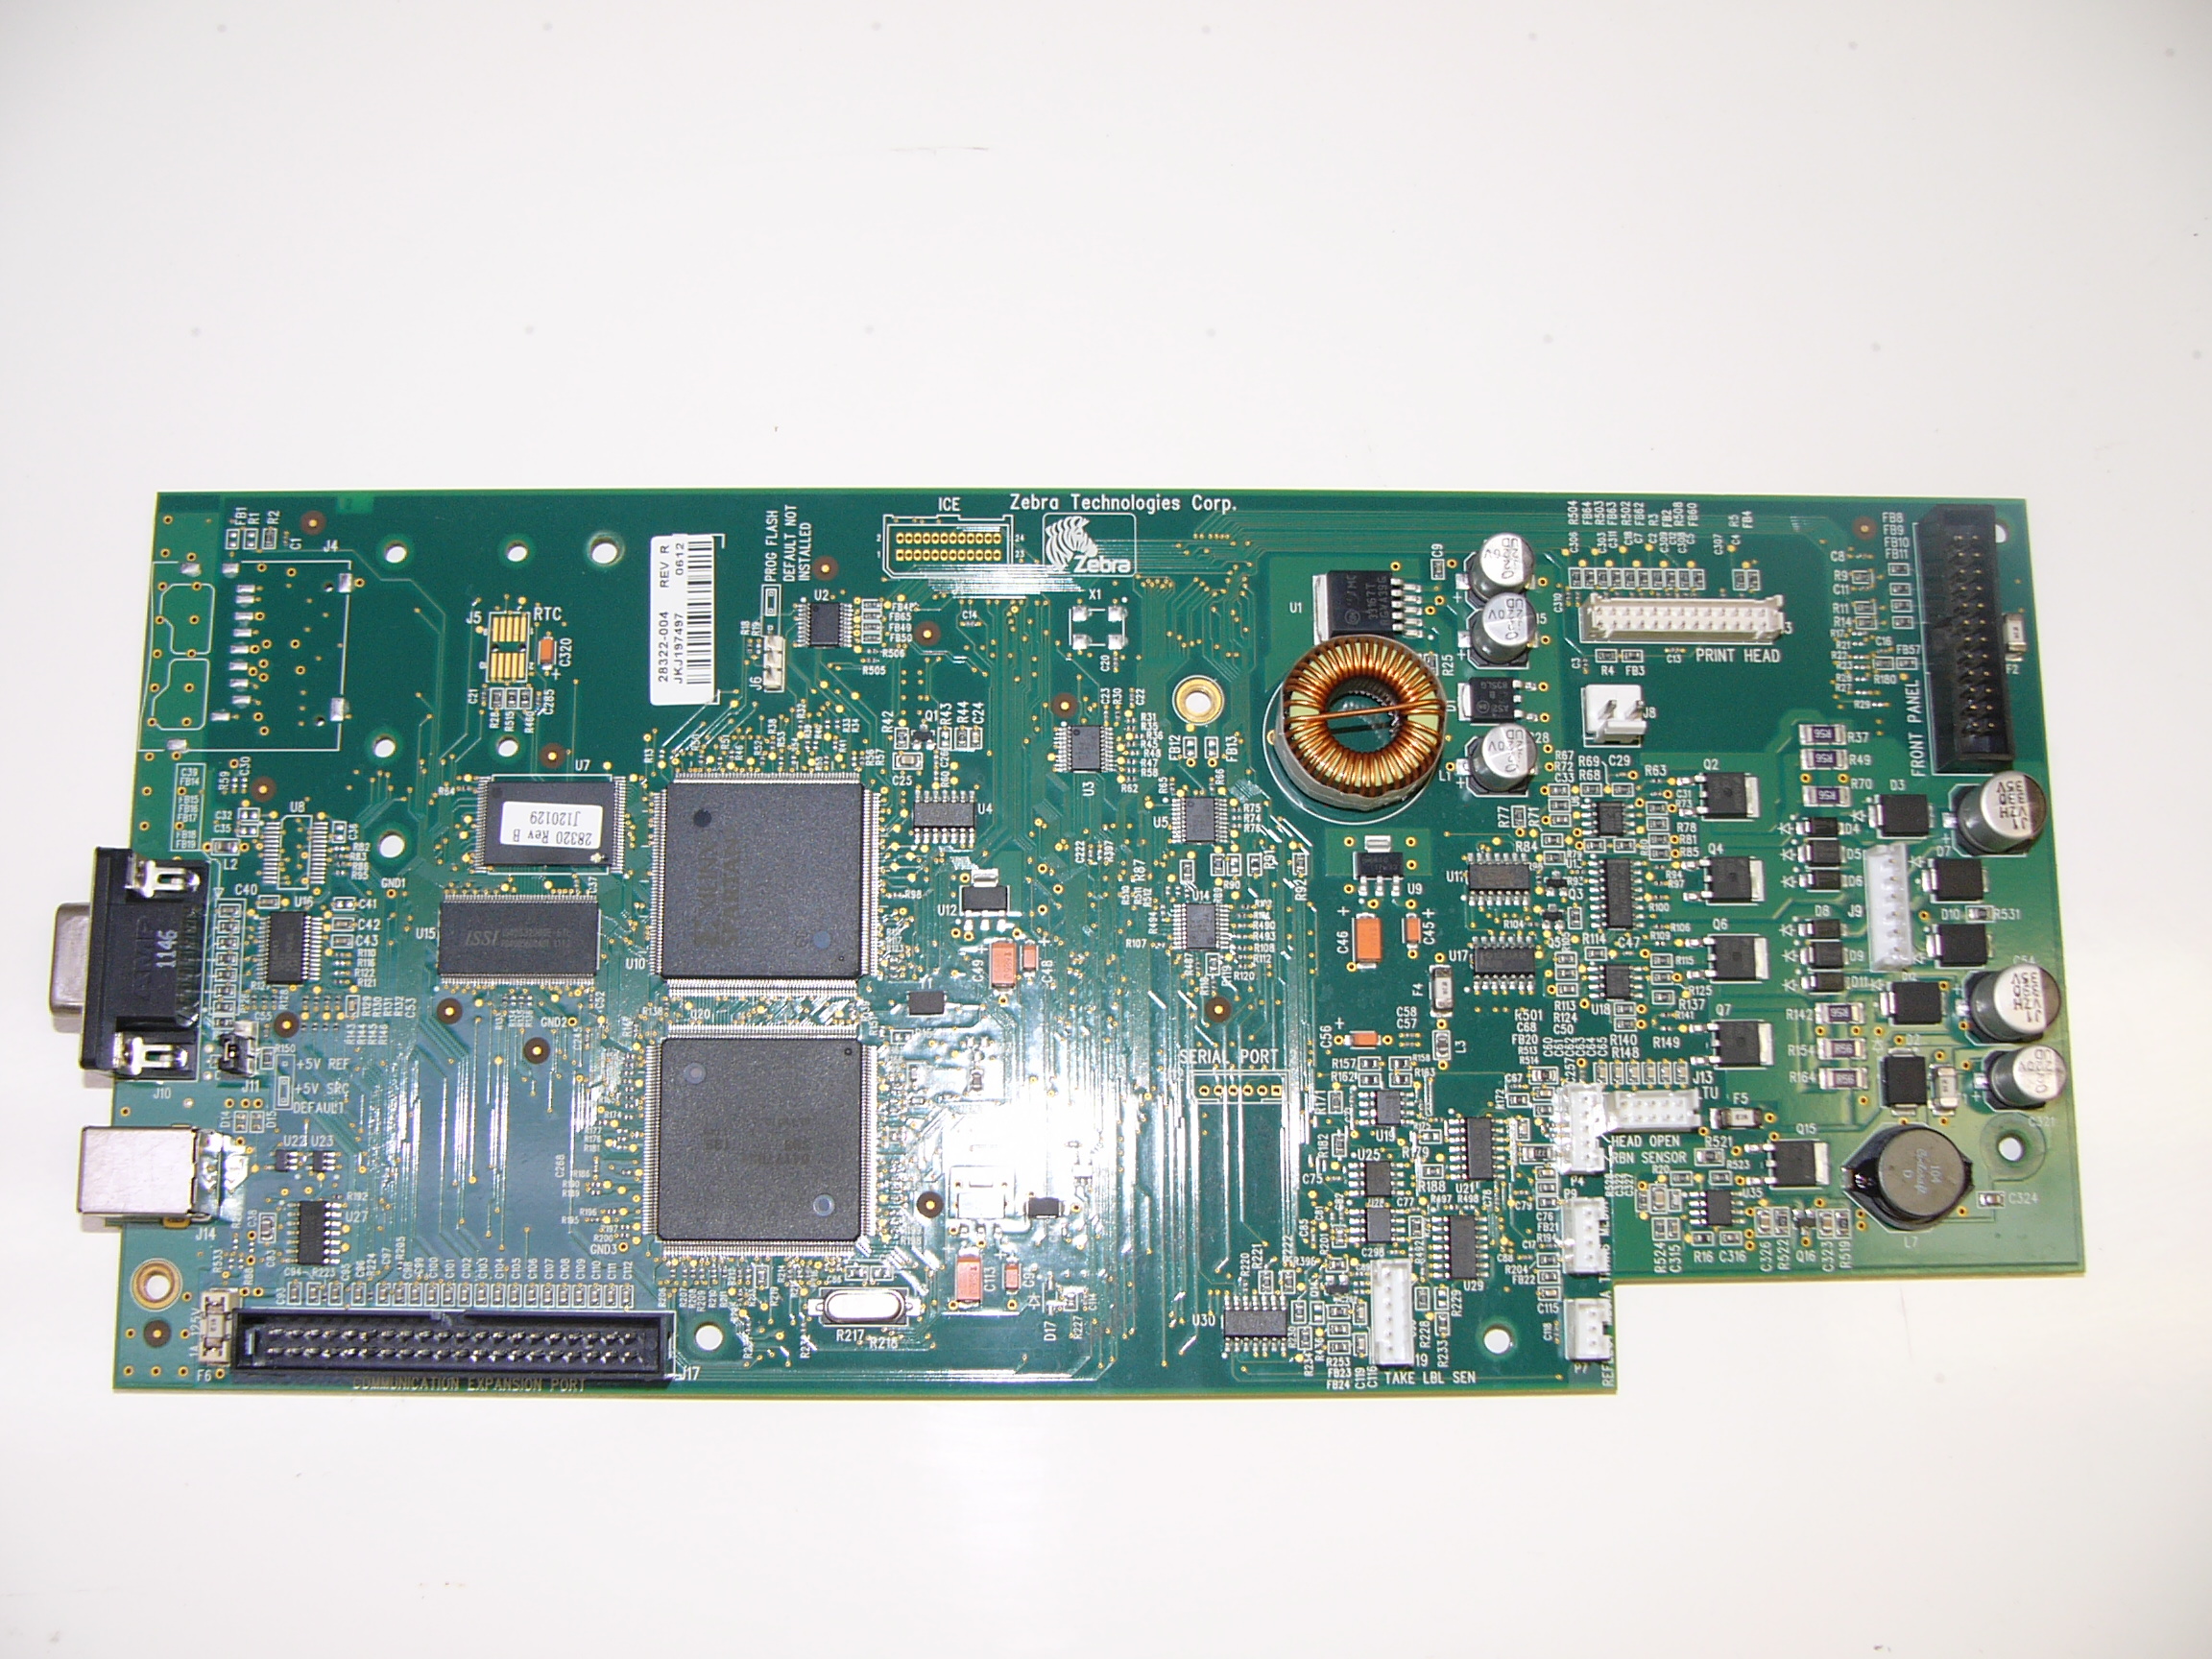 P1008211 -  - P1008211, 4MB Main Logic Board, Zebra S4M, 28322-004